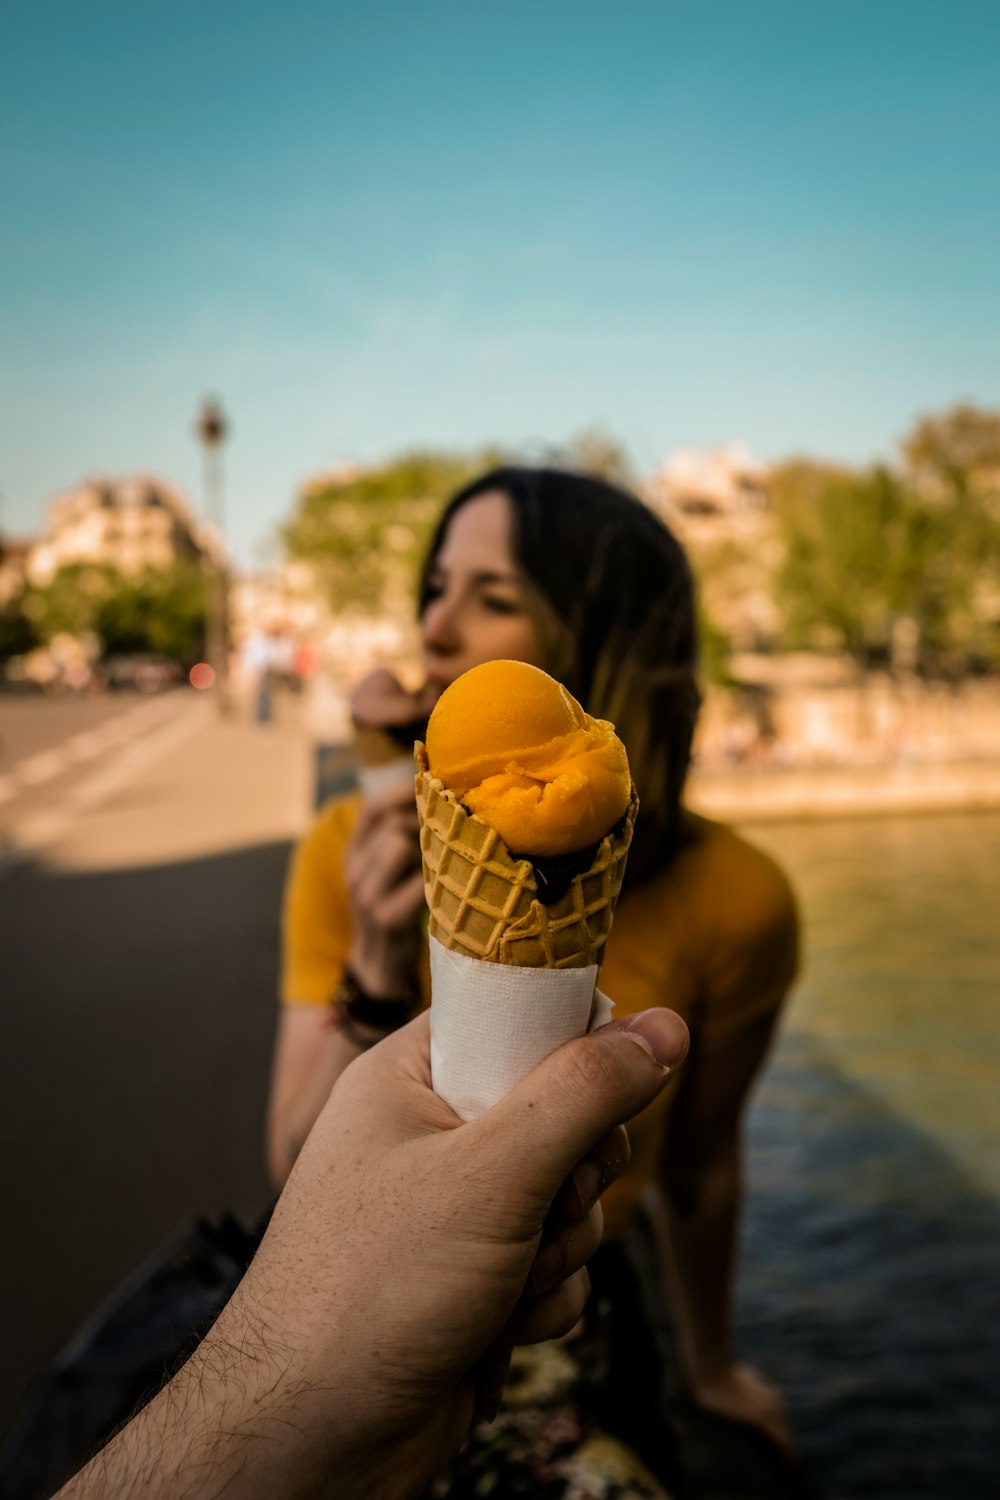 fotografia a fuoco superficiale di una persona che tiene il gelato nel cono